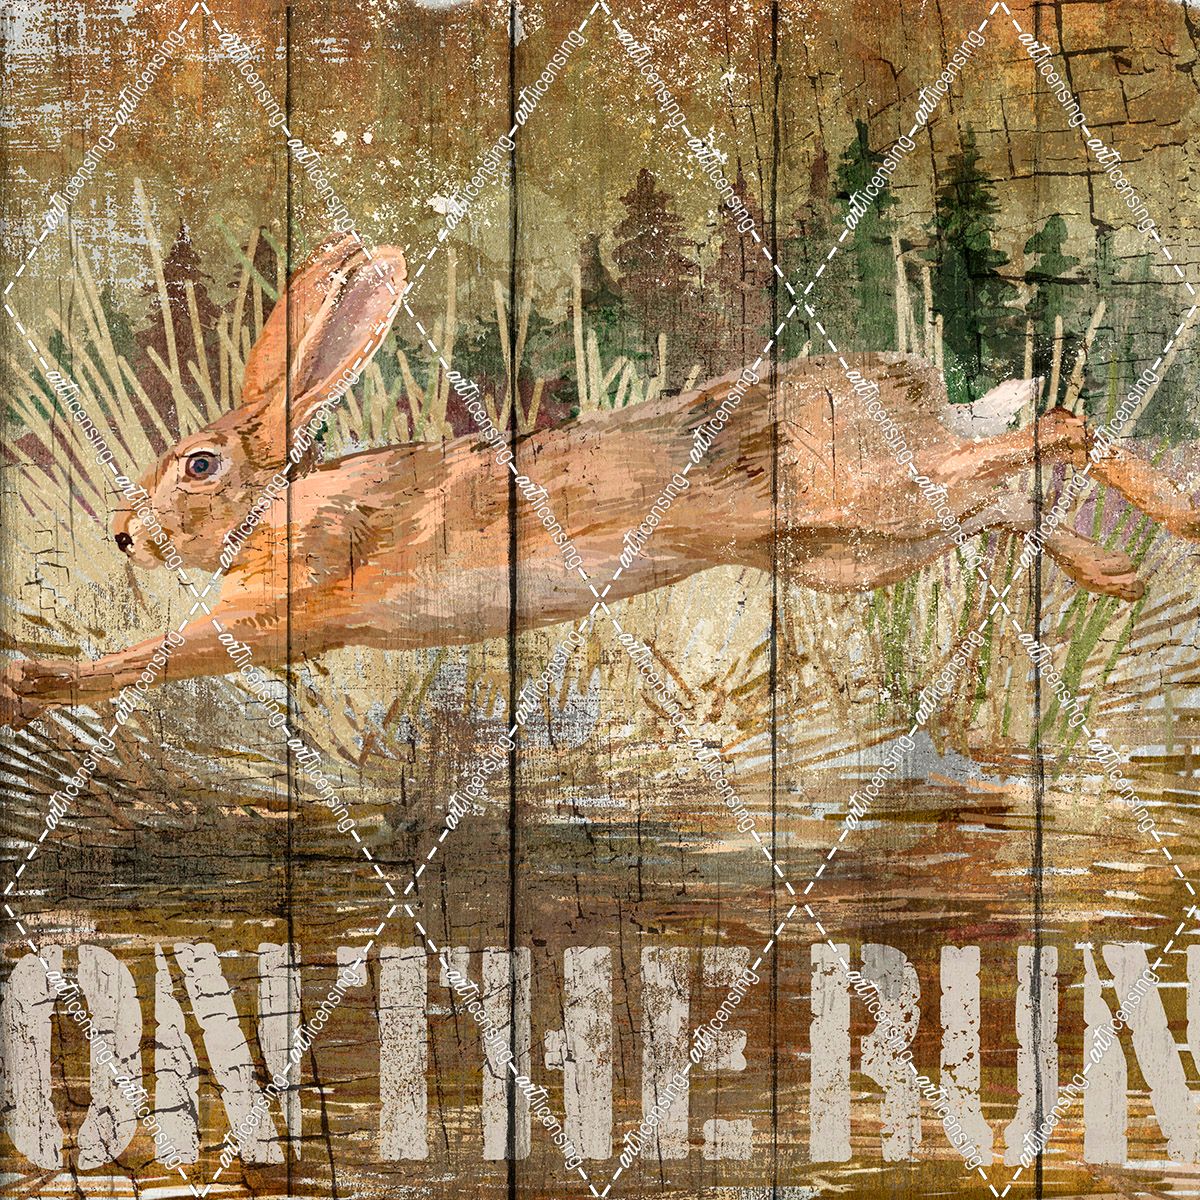 Rabbit on the Run